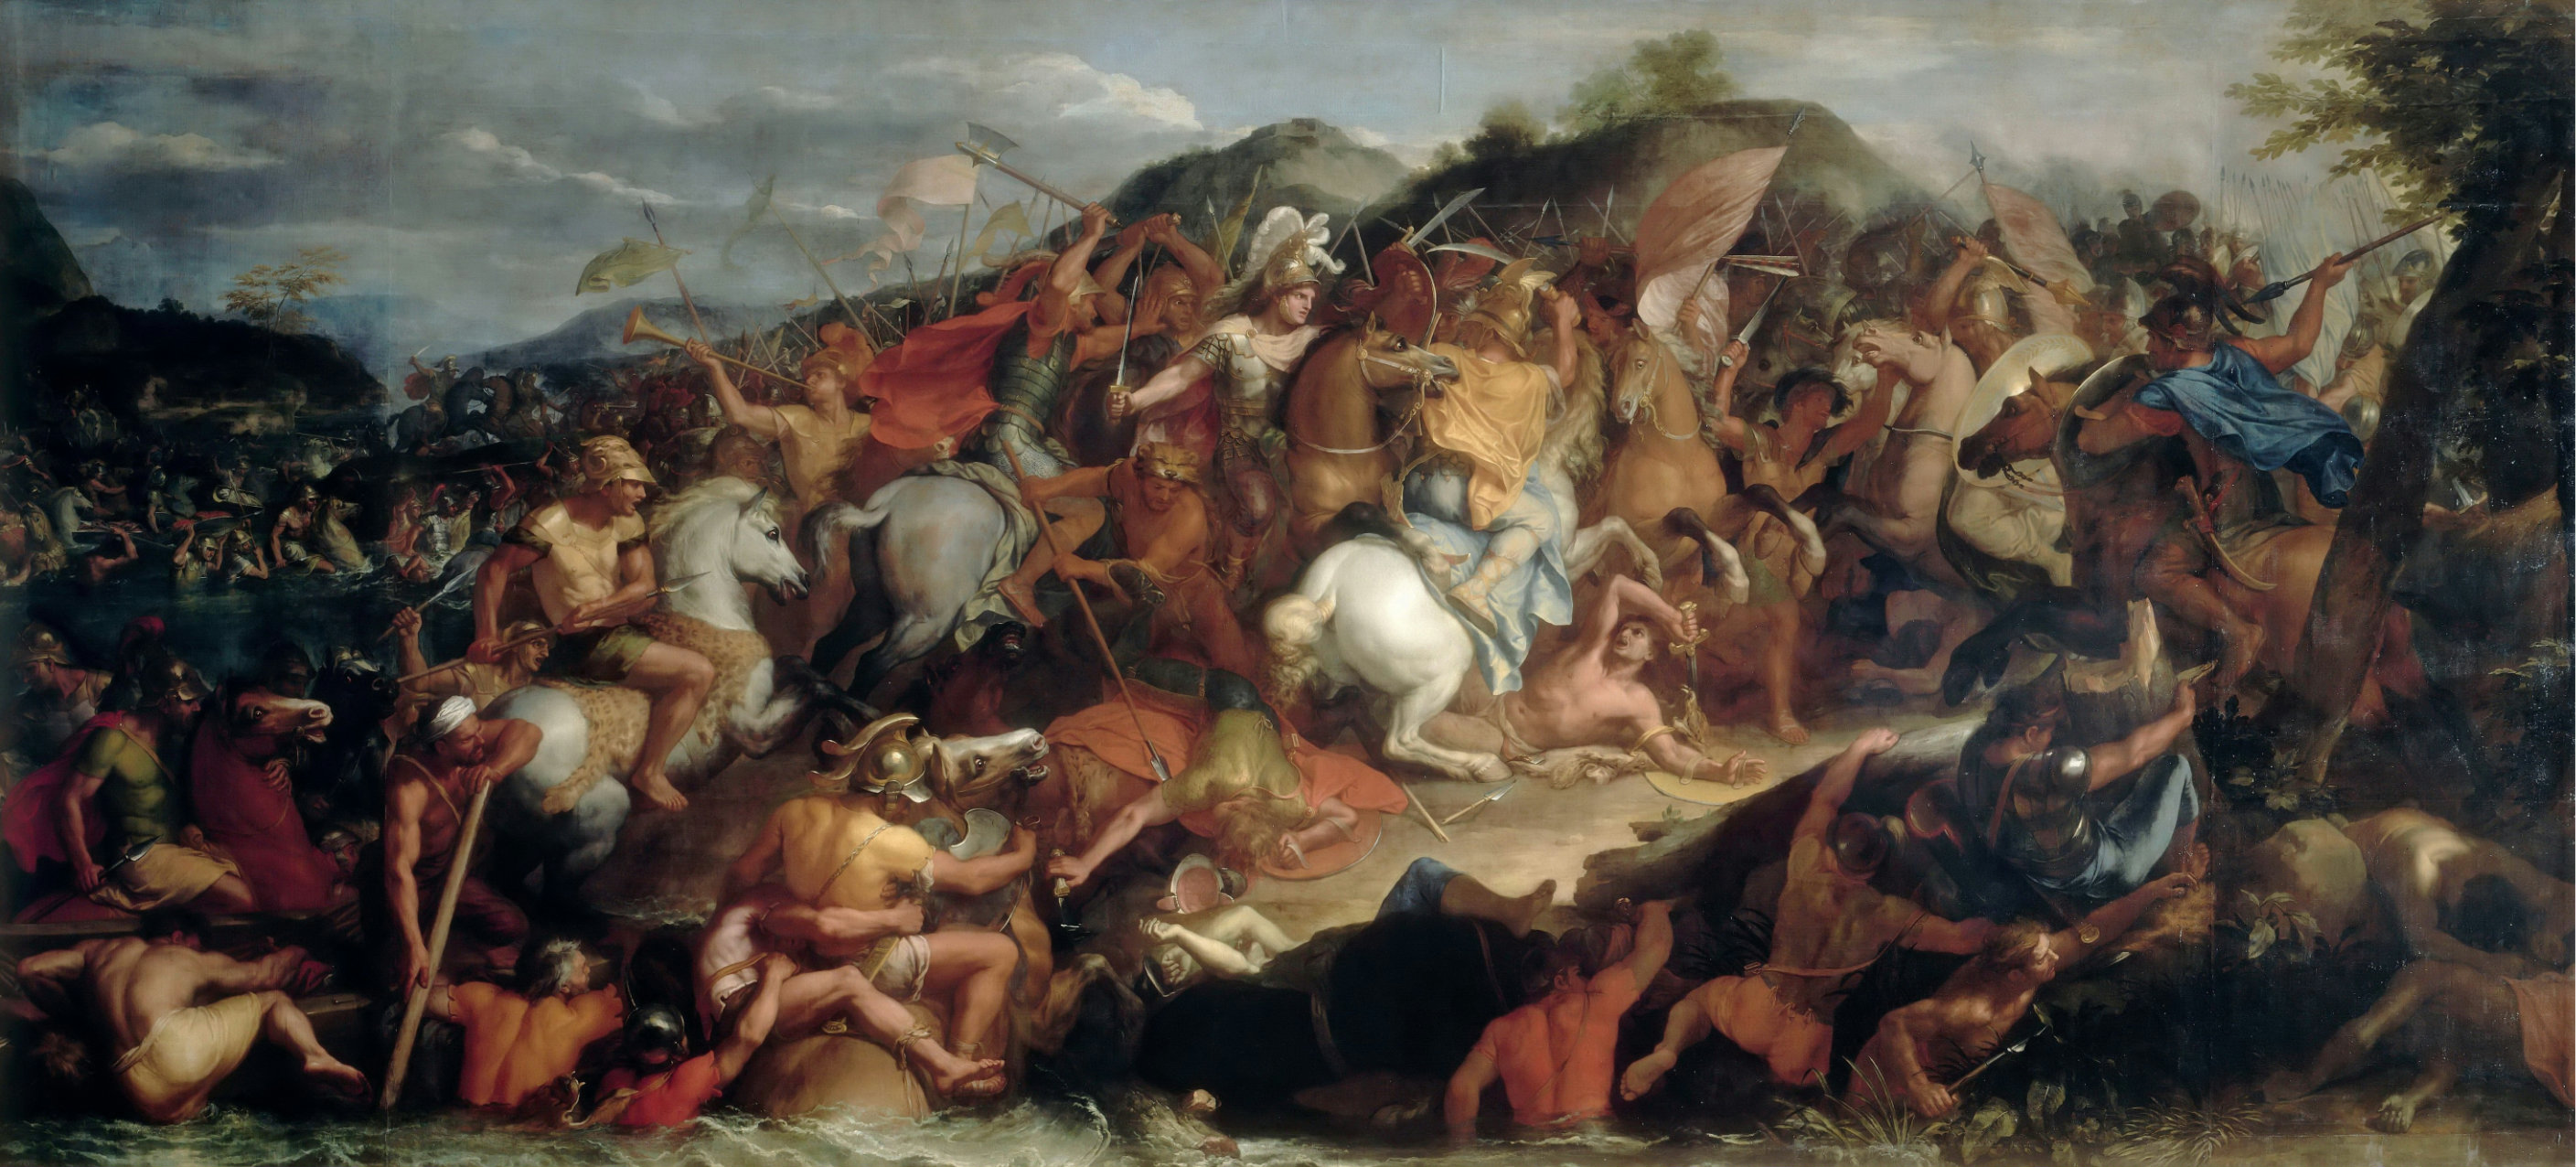 샤를 르브룅, 그라니쿠스 전투(1664~1665), 캔버스에 유채, 470×1209㎝, 파리 루브르박물관 소장.  사회평론아카데미 제공